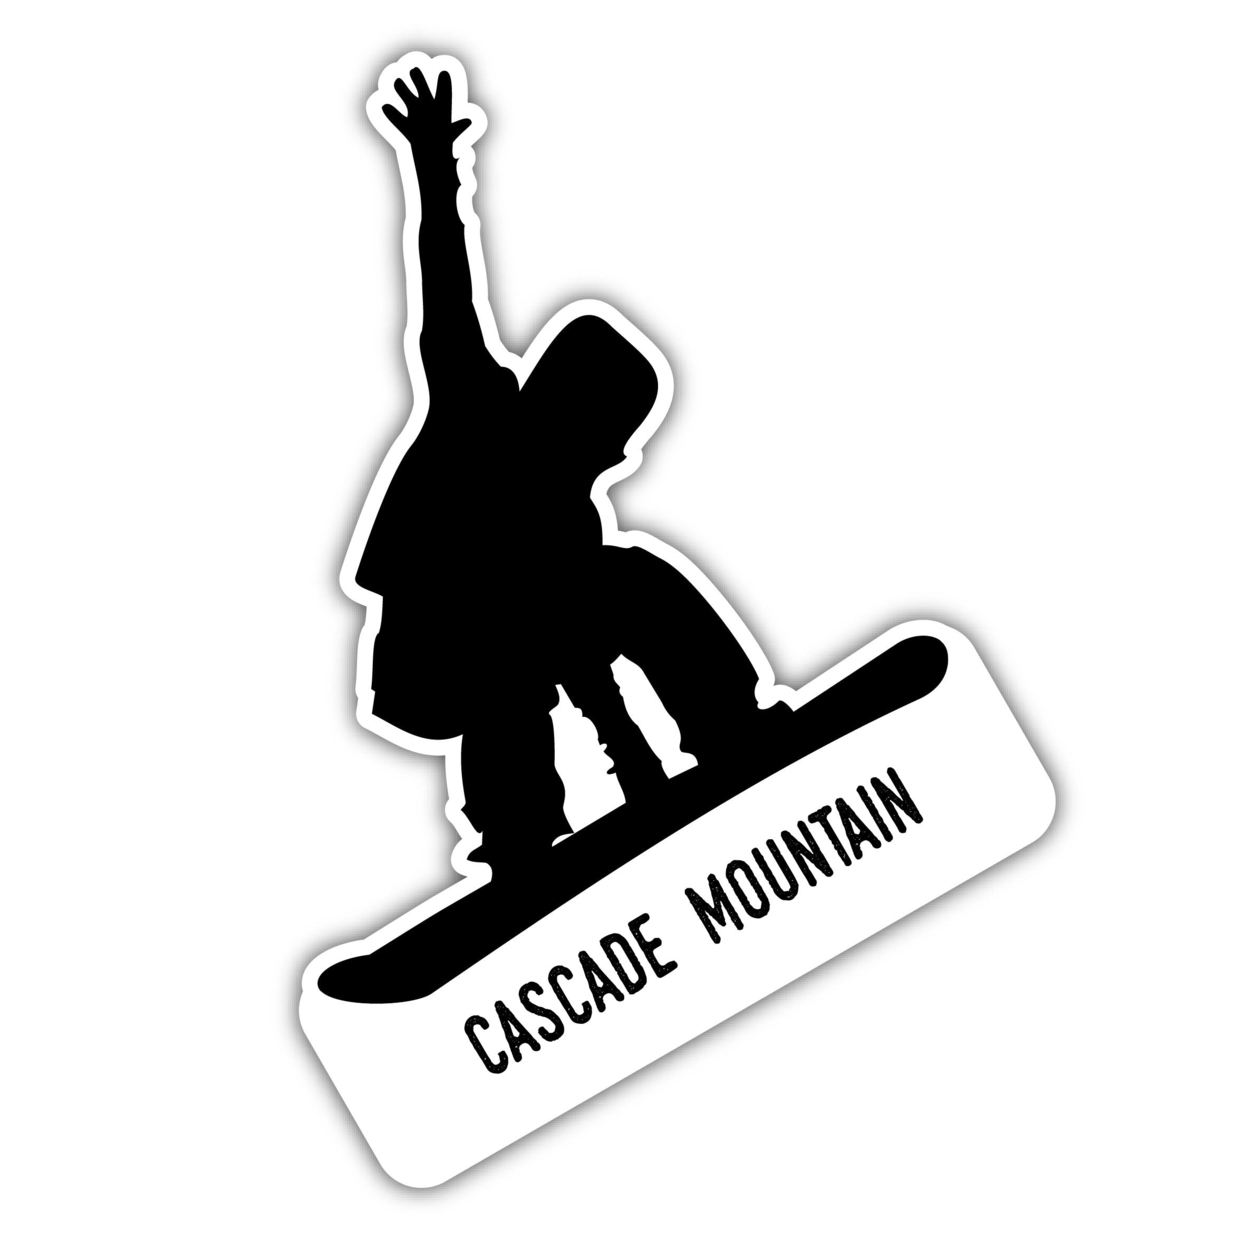 Cascade Mountain Wisconsin Ski Adventures Souvenir 4 Inch Vinyl Decal Sticker Board Design